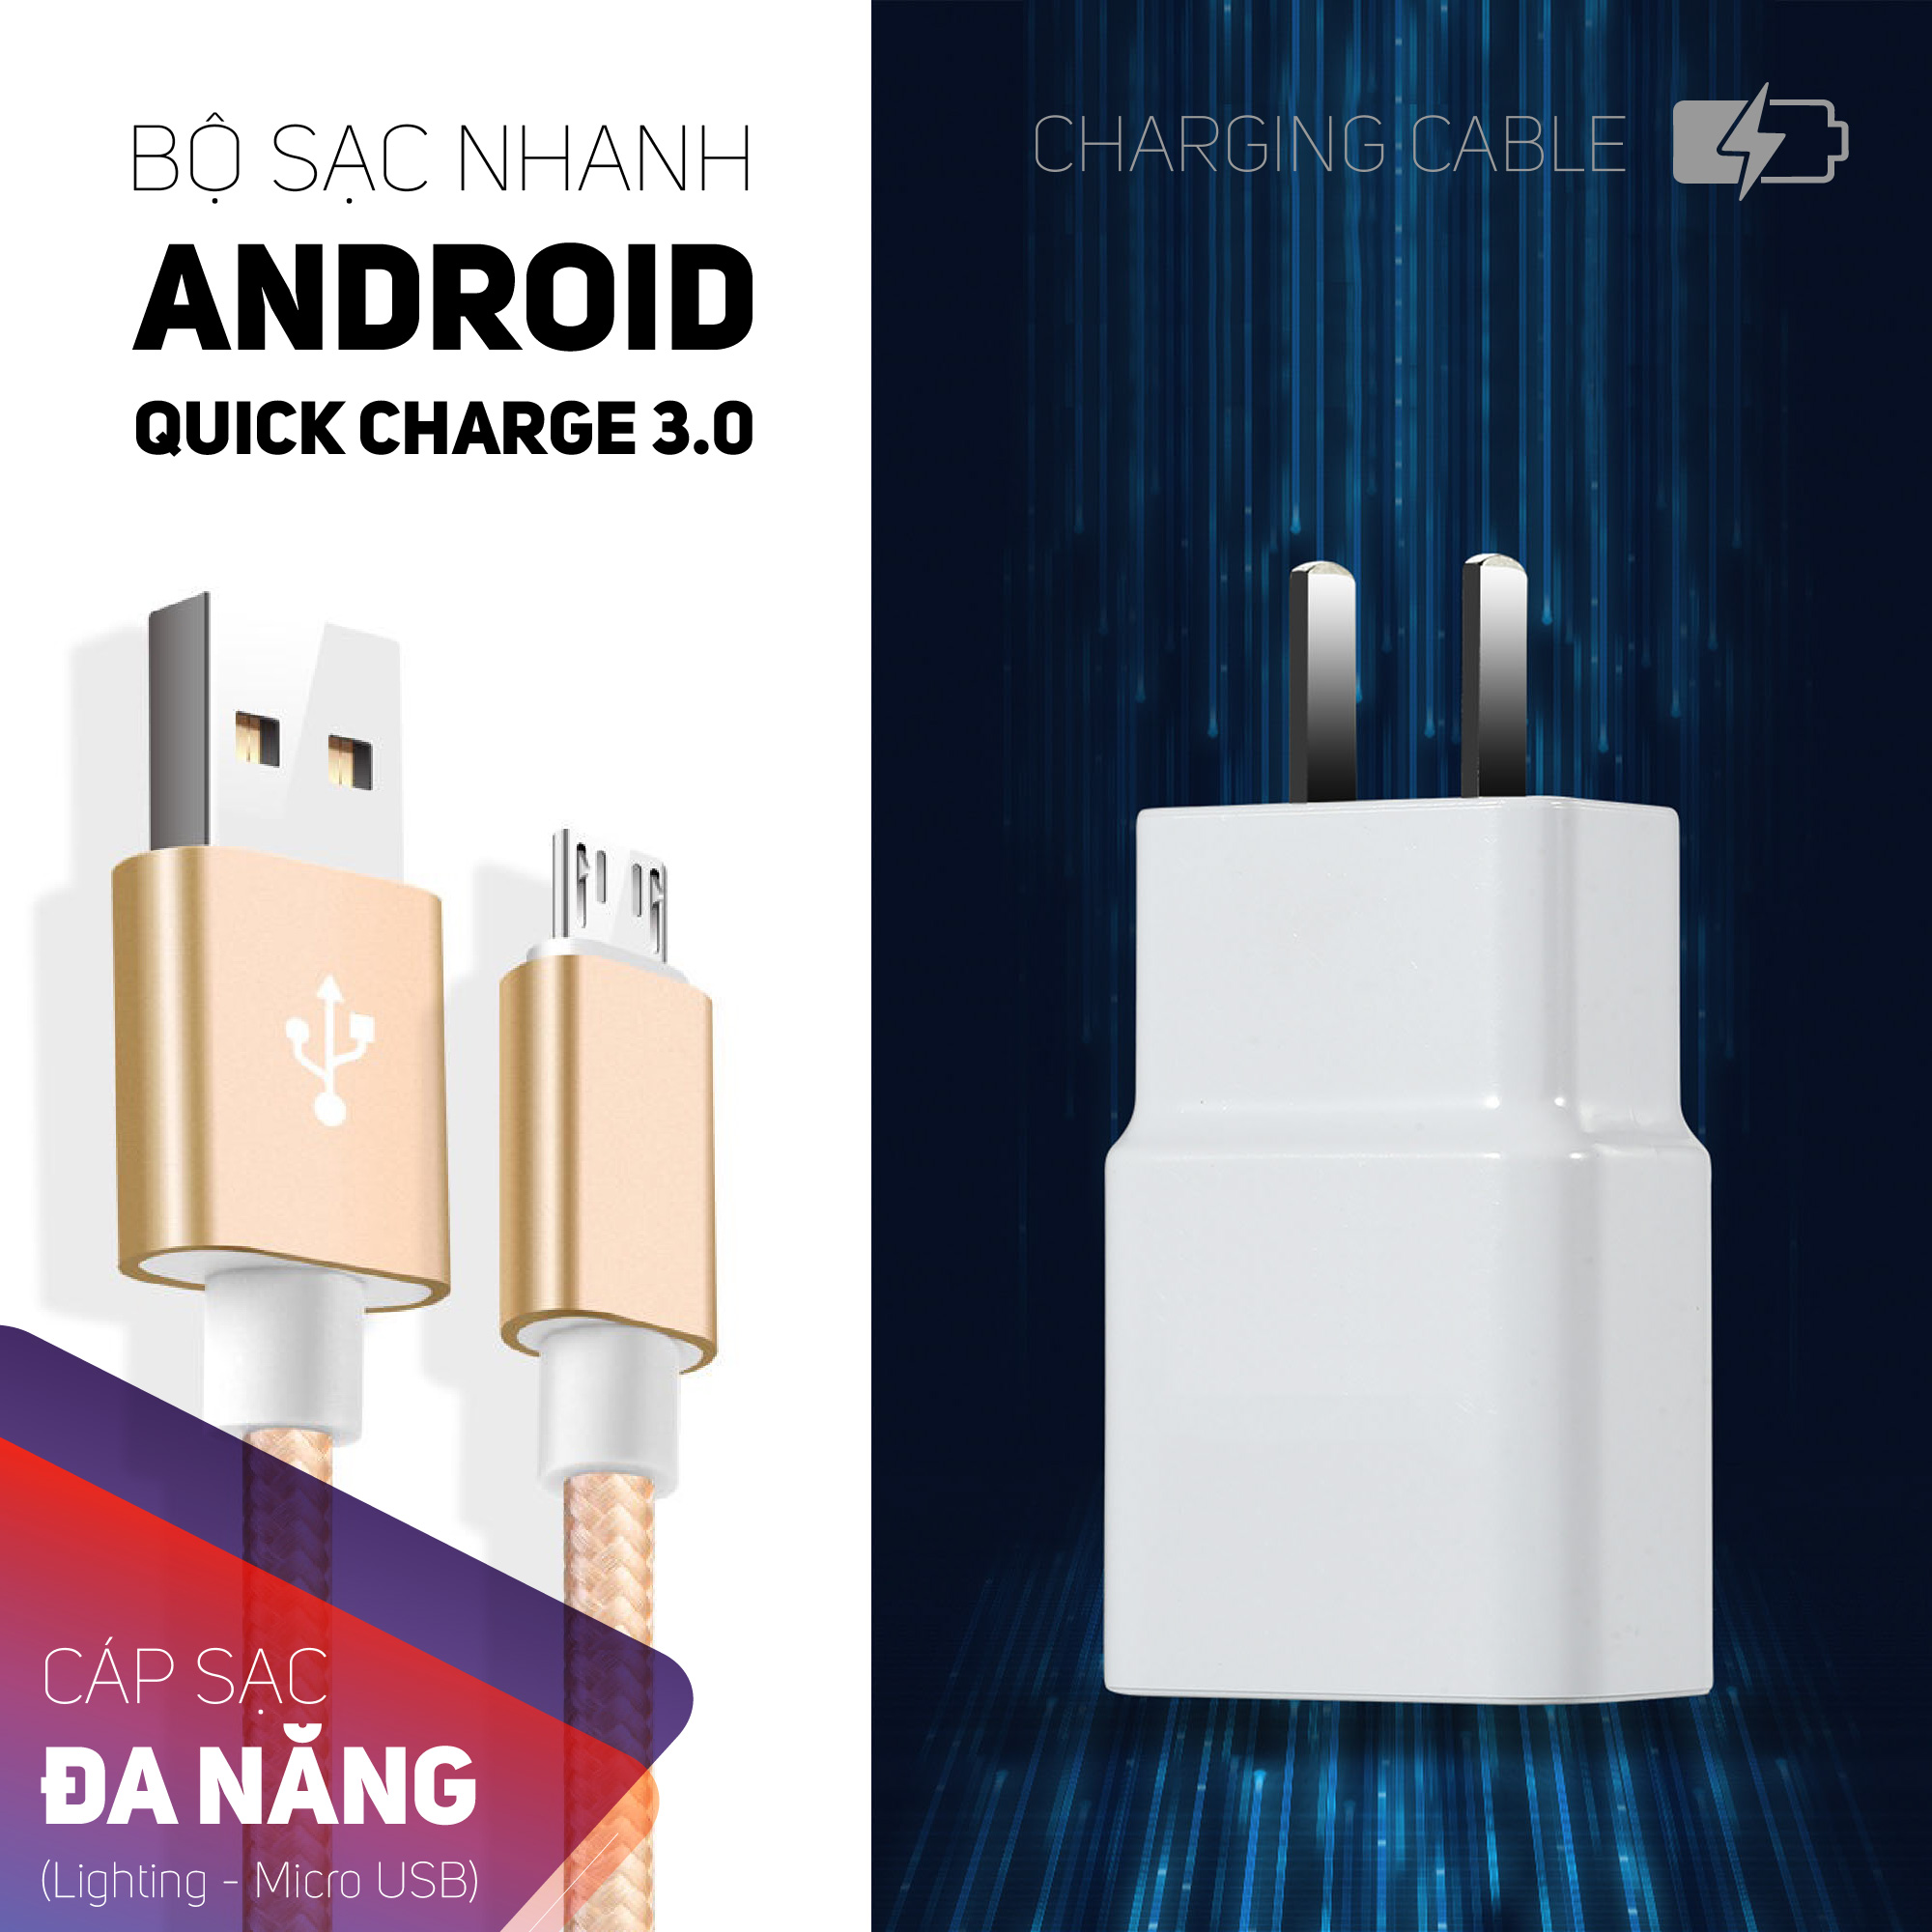 Bộ cáp sạc Mirco USB kèm theo củ sạc Quick charge 3.0,dây cáp sạc android bọc vải chắc chắn chọn màu ngẫu nhiên,củ sạc và cáp sạc nhanh tiện lợi có thể sạc hầu hết các dòng điện thoại trên thị trường